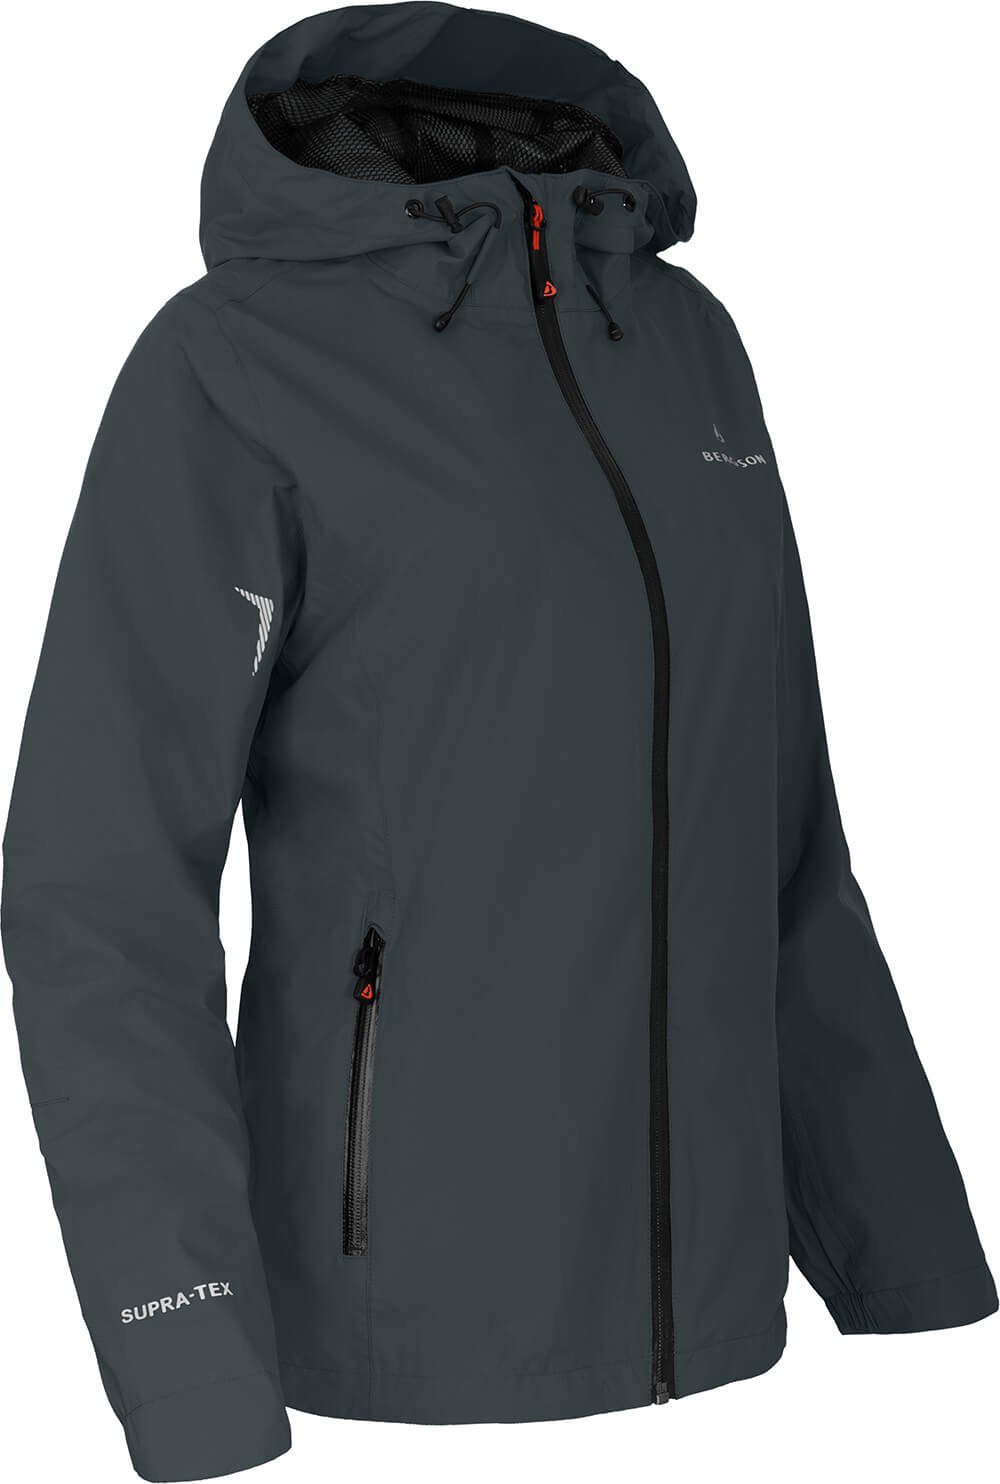 Bergson Outdoorjacke HELLI Damen Regenjacke, Netzfutter, 12000 mm Wassersäule, Normalgrößen, dunkel grau | Jacken